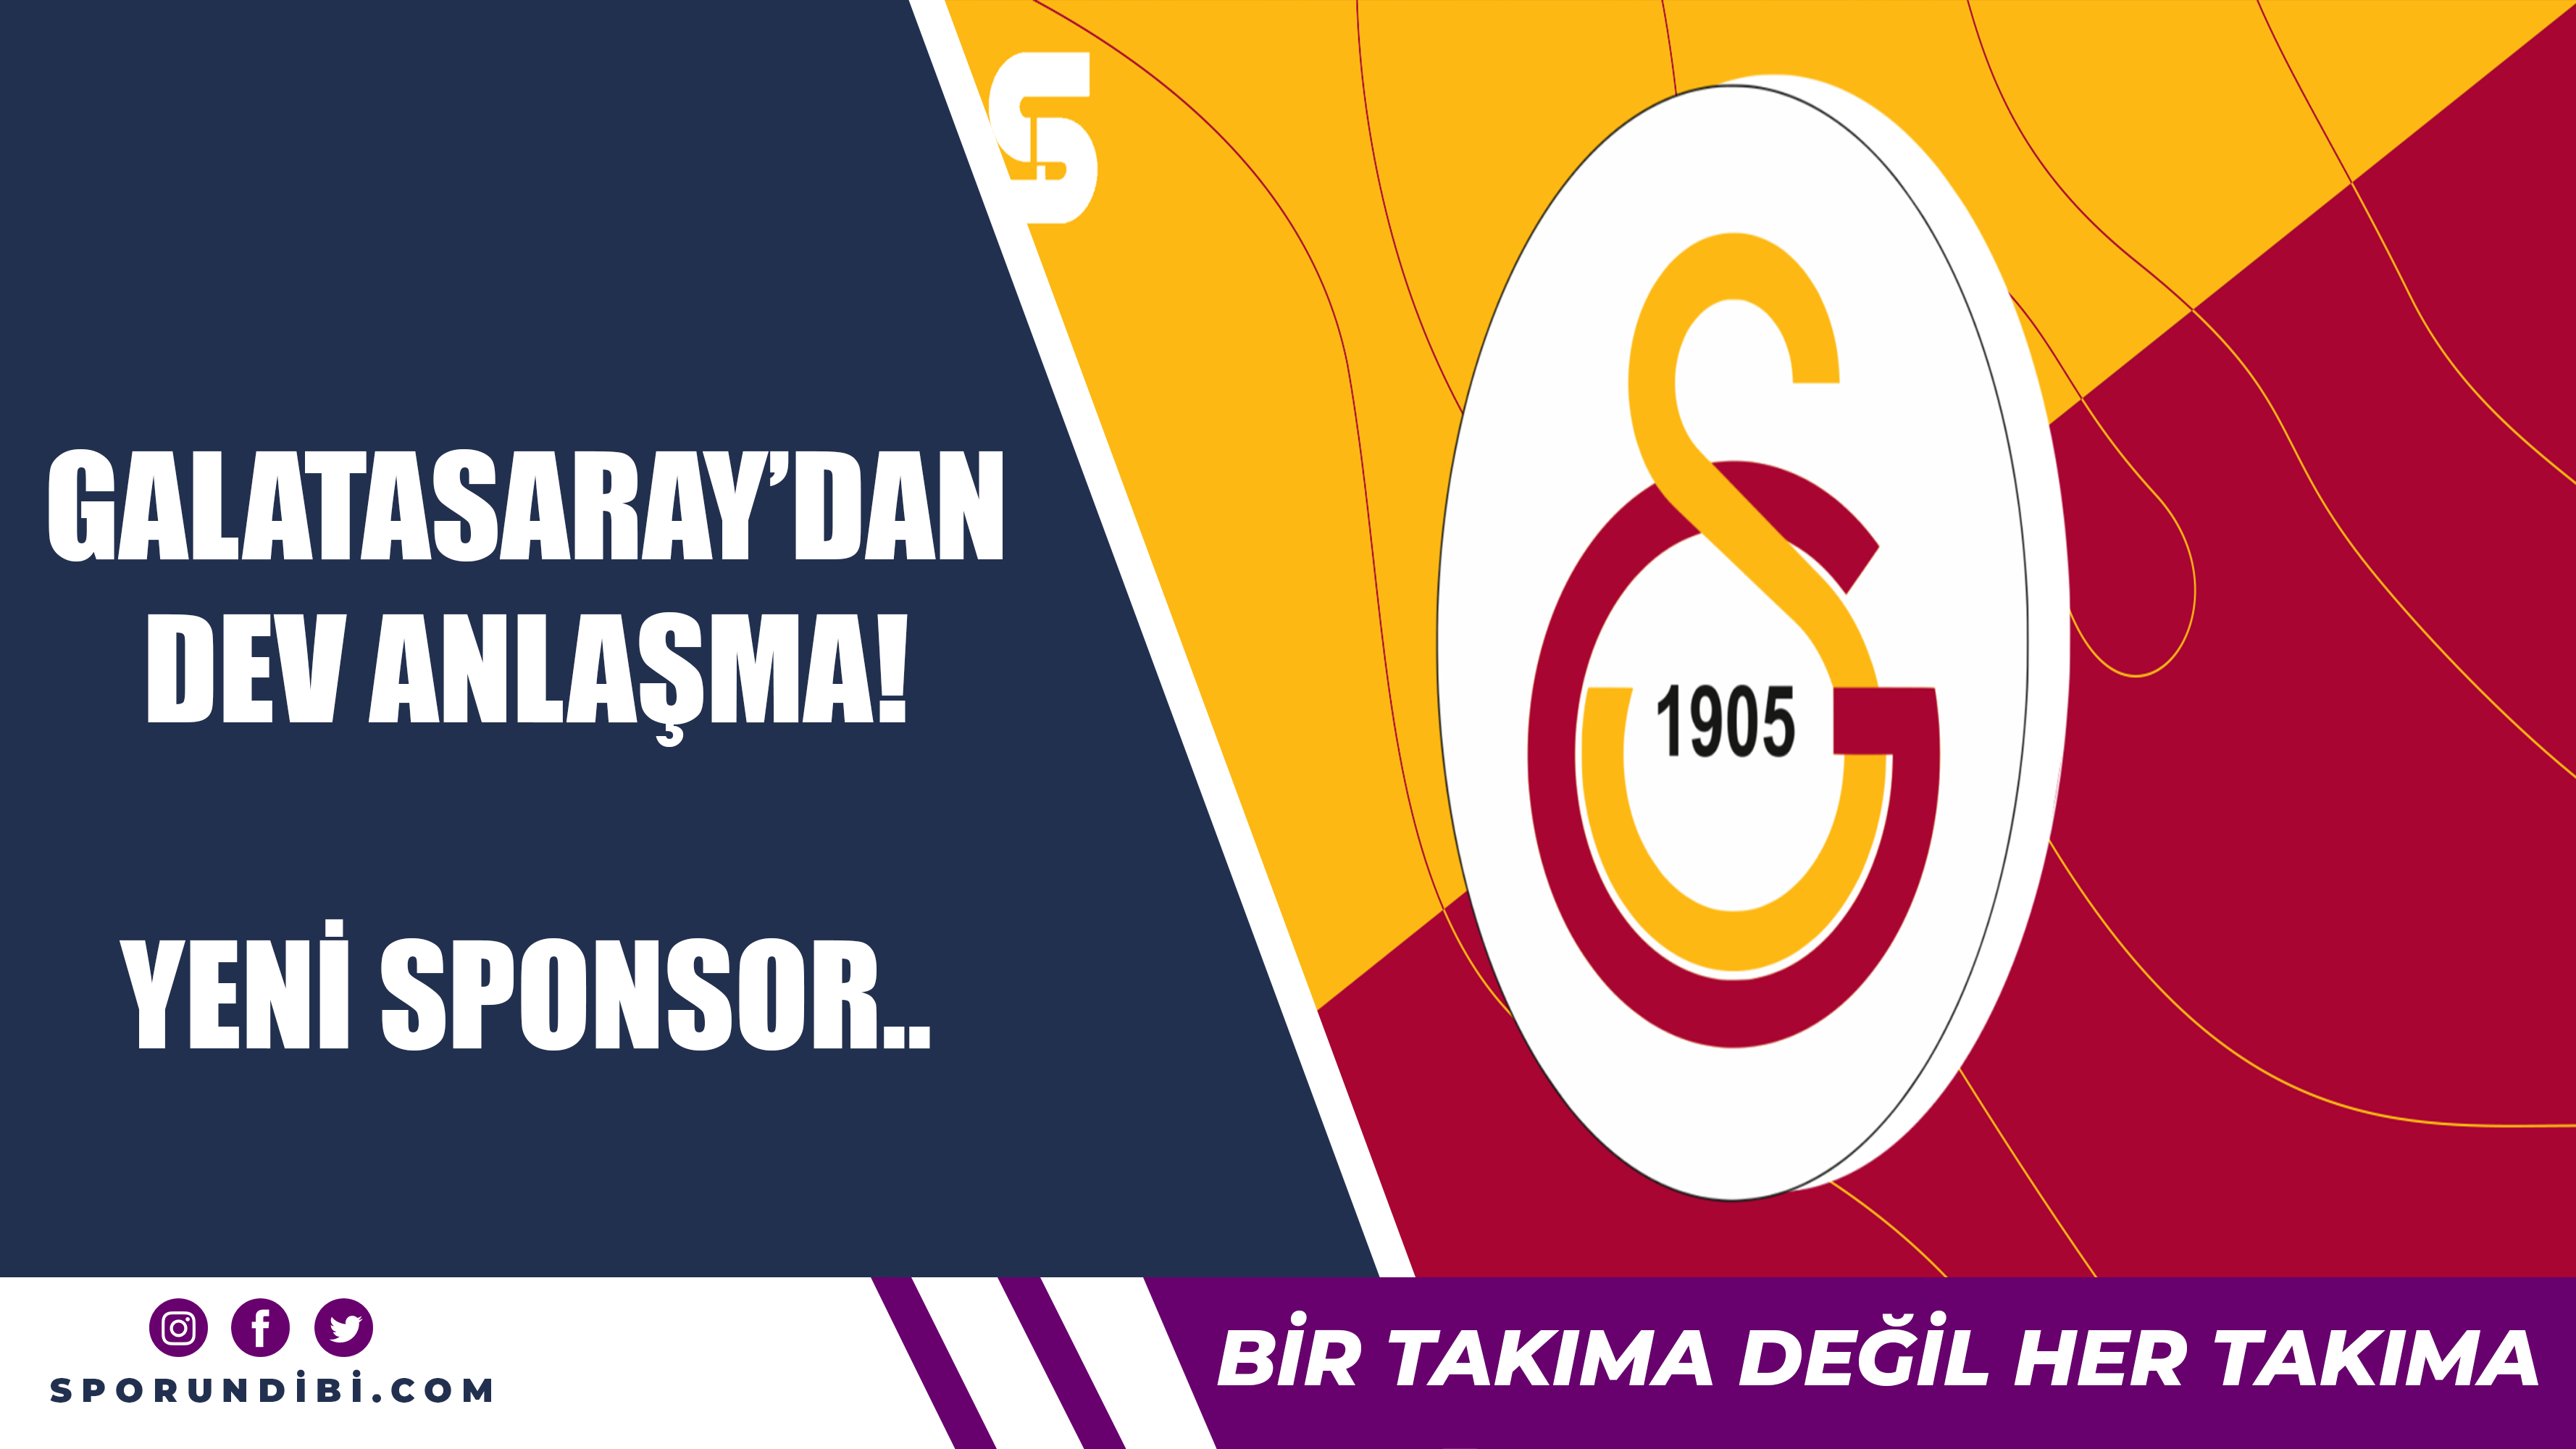 Galatasaray'dan dev anlaşma! Yeni sponsor...